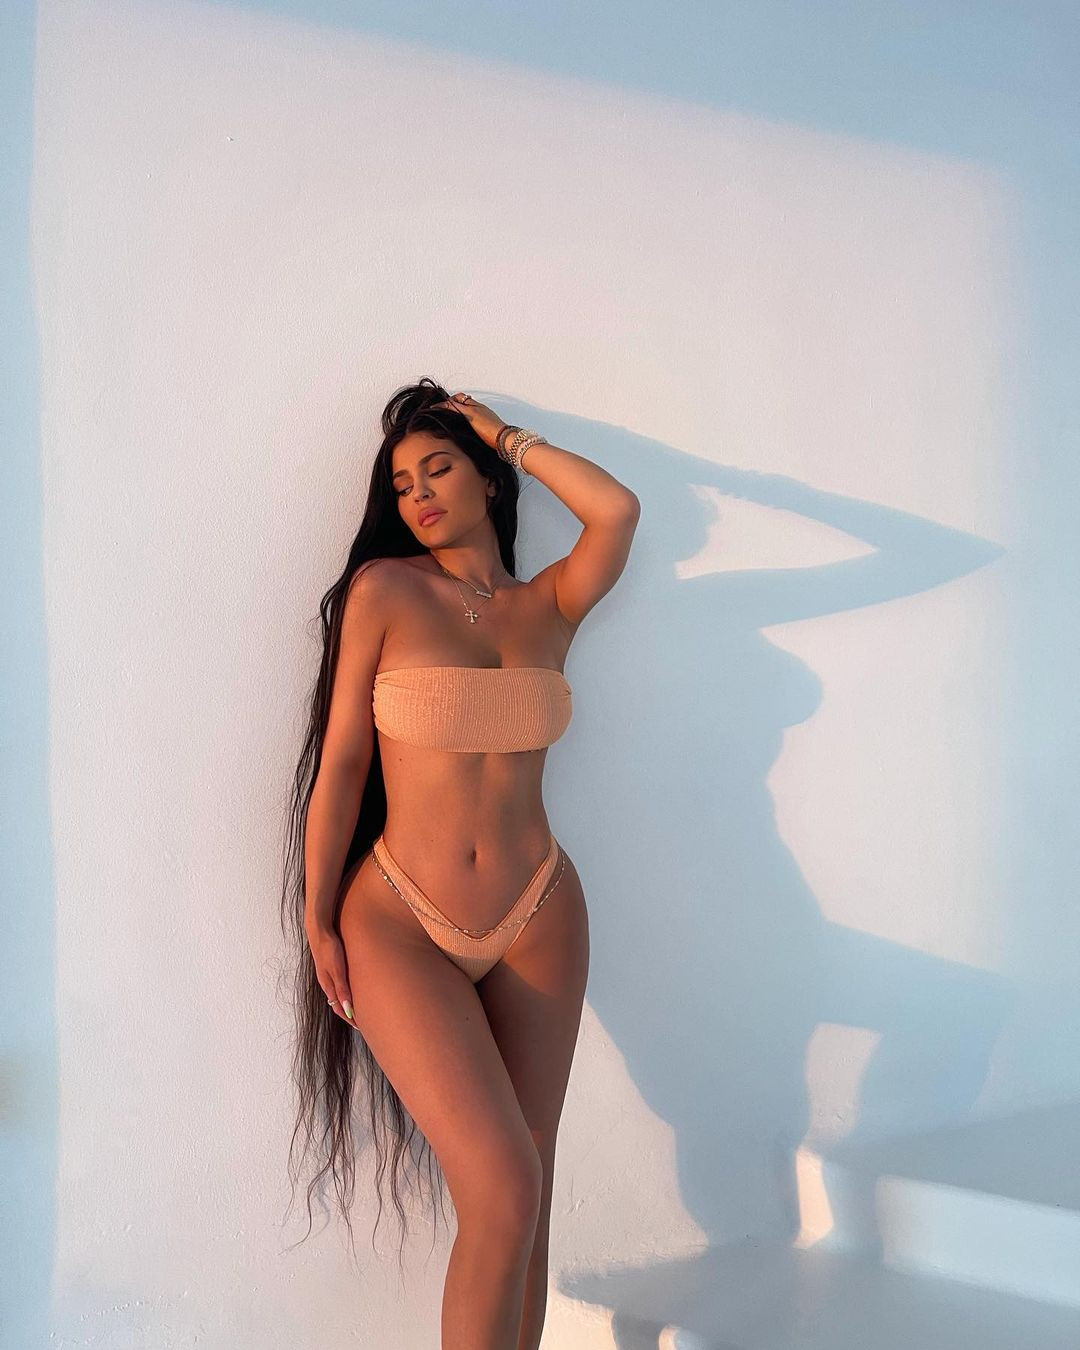 Кайли Дженнер: модель с впечатляющими формами (фото и биография) 21 Kylie Jenner